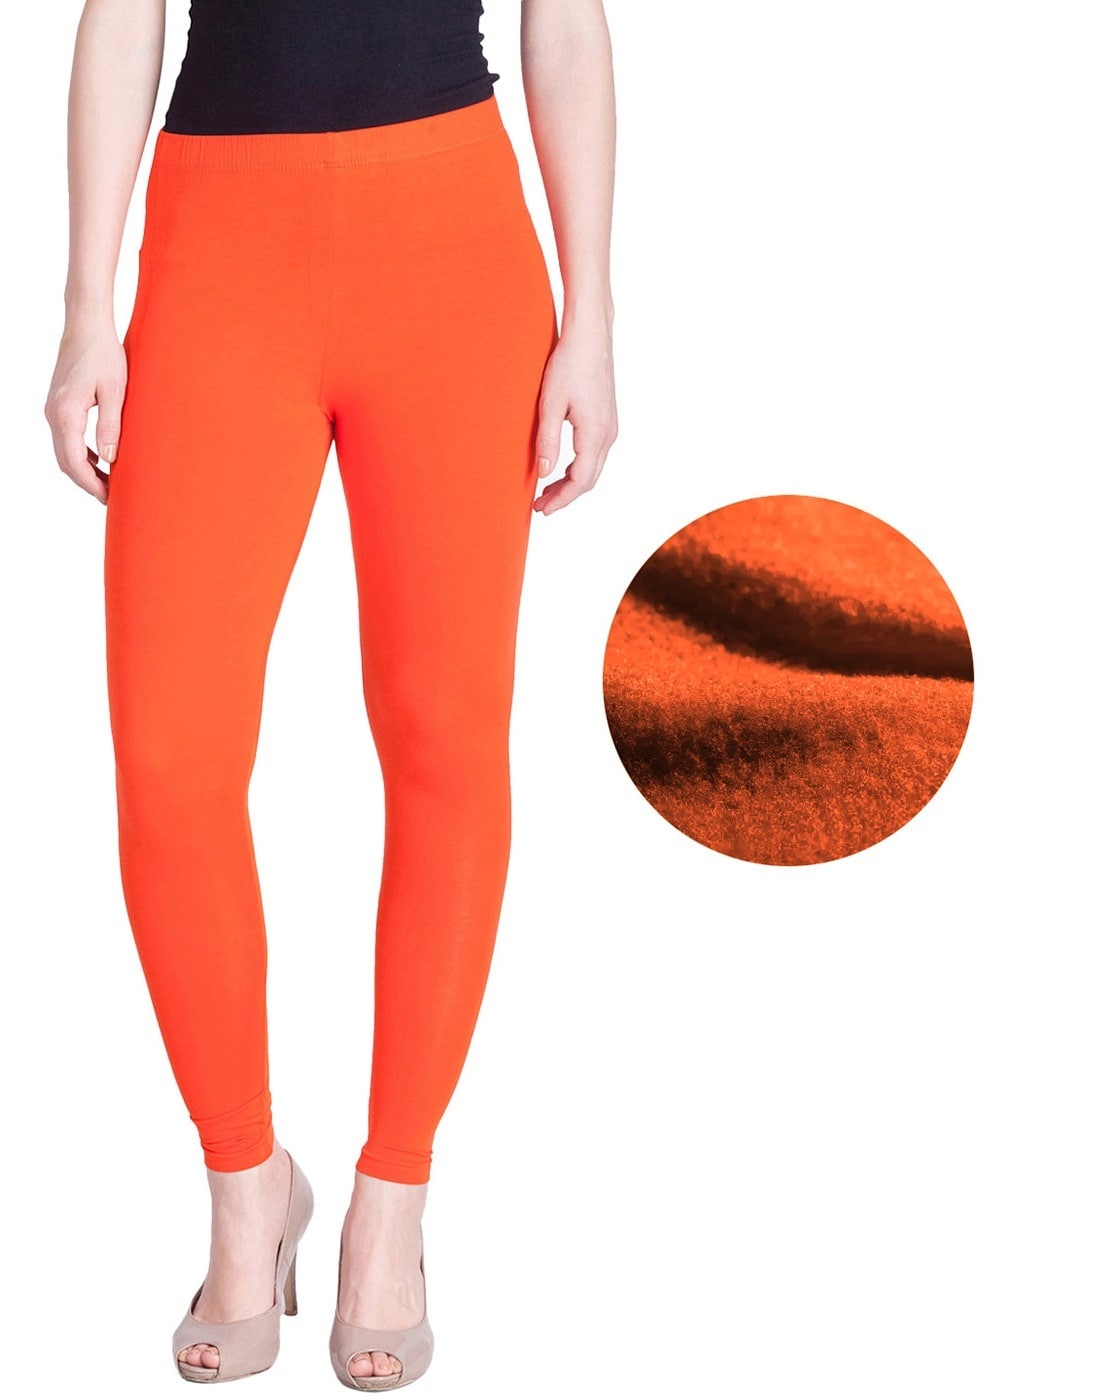 Buy Orange Woollen Leggings Online - W for Woman